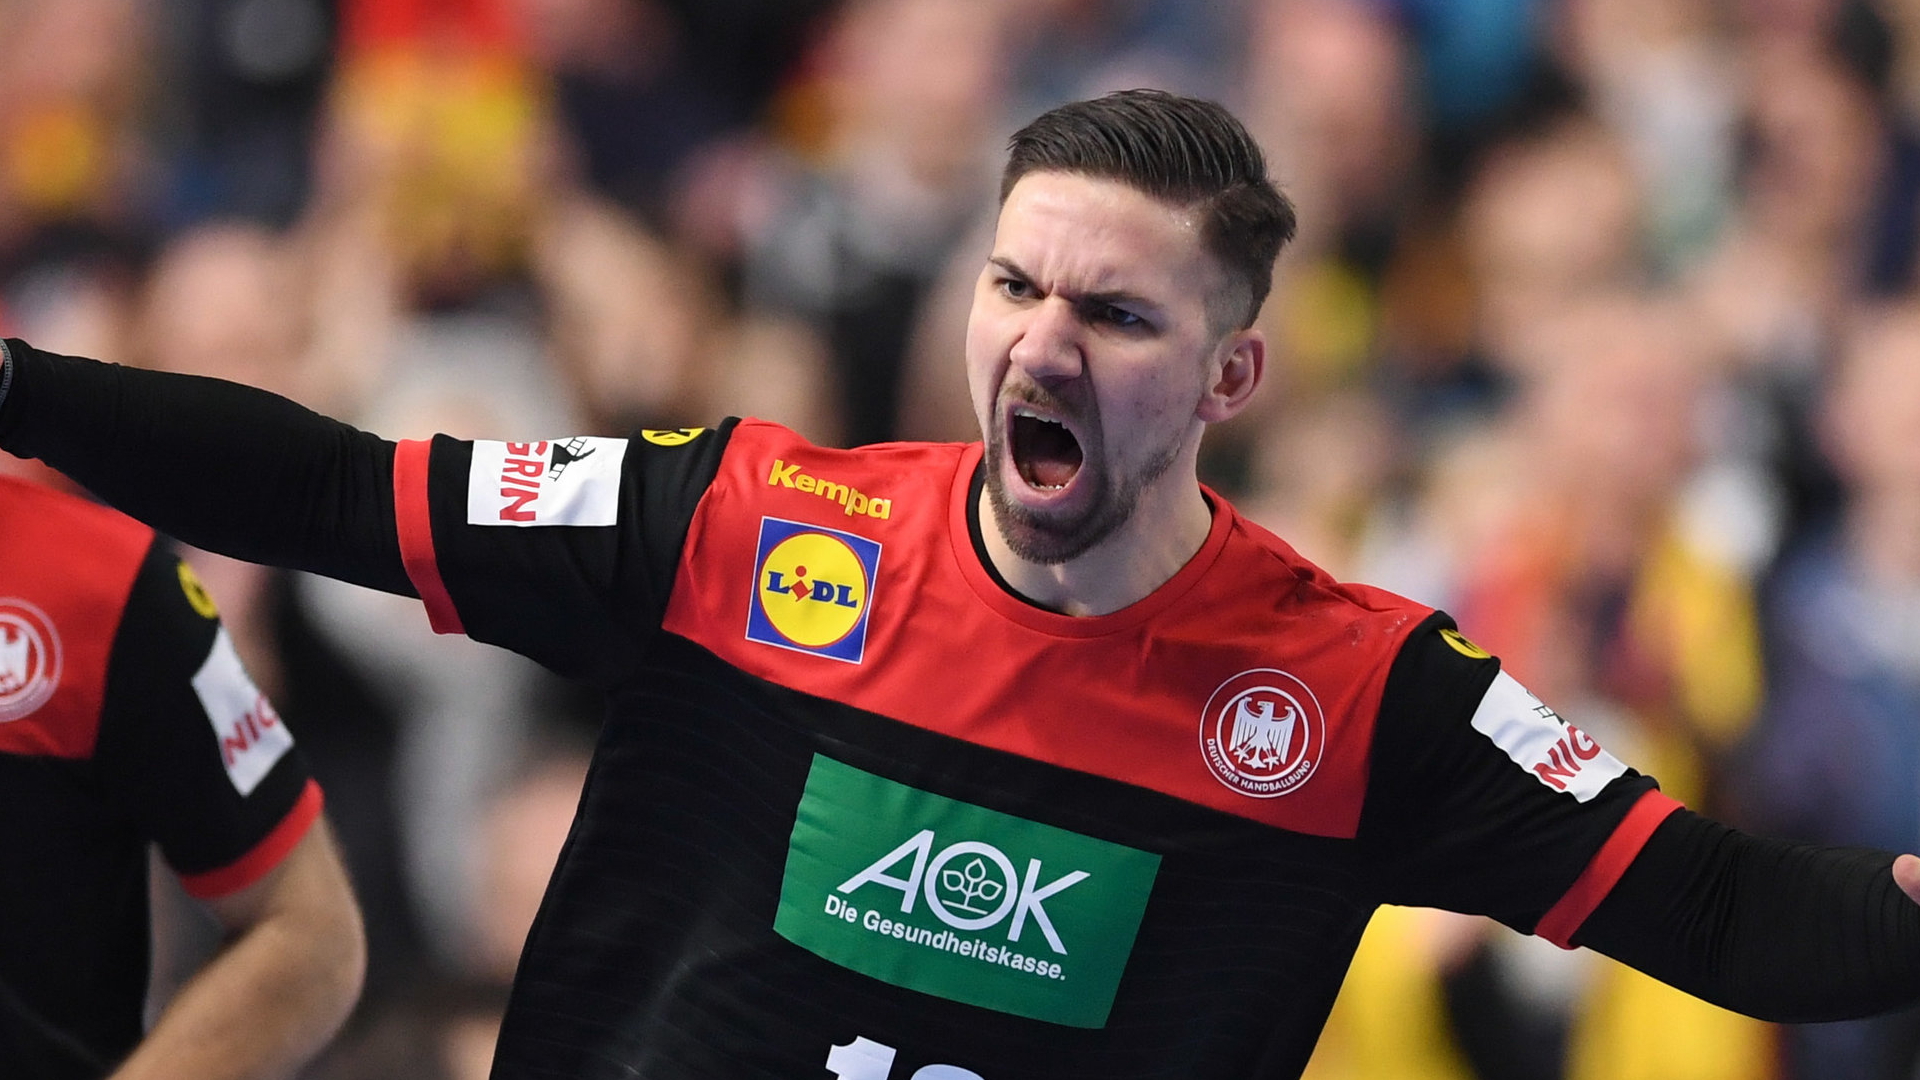 Der deutsche Handballer Wieder jubelt über einen Treffer | Bildquelle: dpa